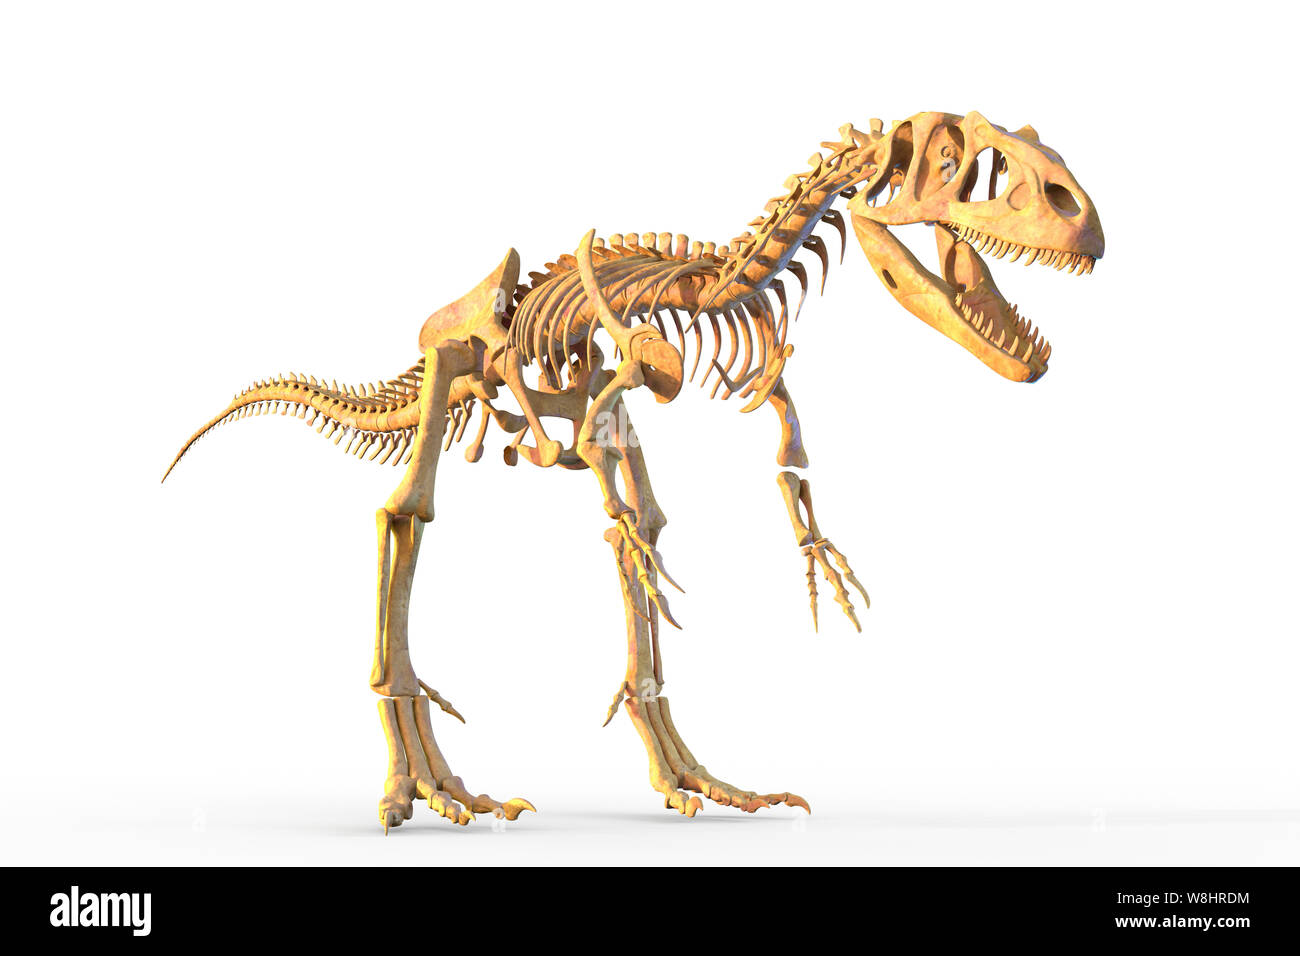 Squelette de dinosaure Allosaurus, illustration. Allosaurs vécu 155-150 millions d'années durant le Jurassique tardif. Banque D'Images